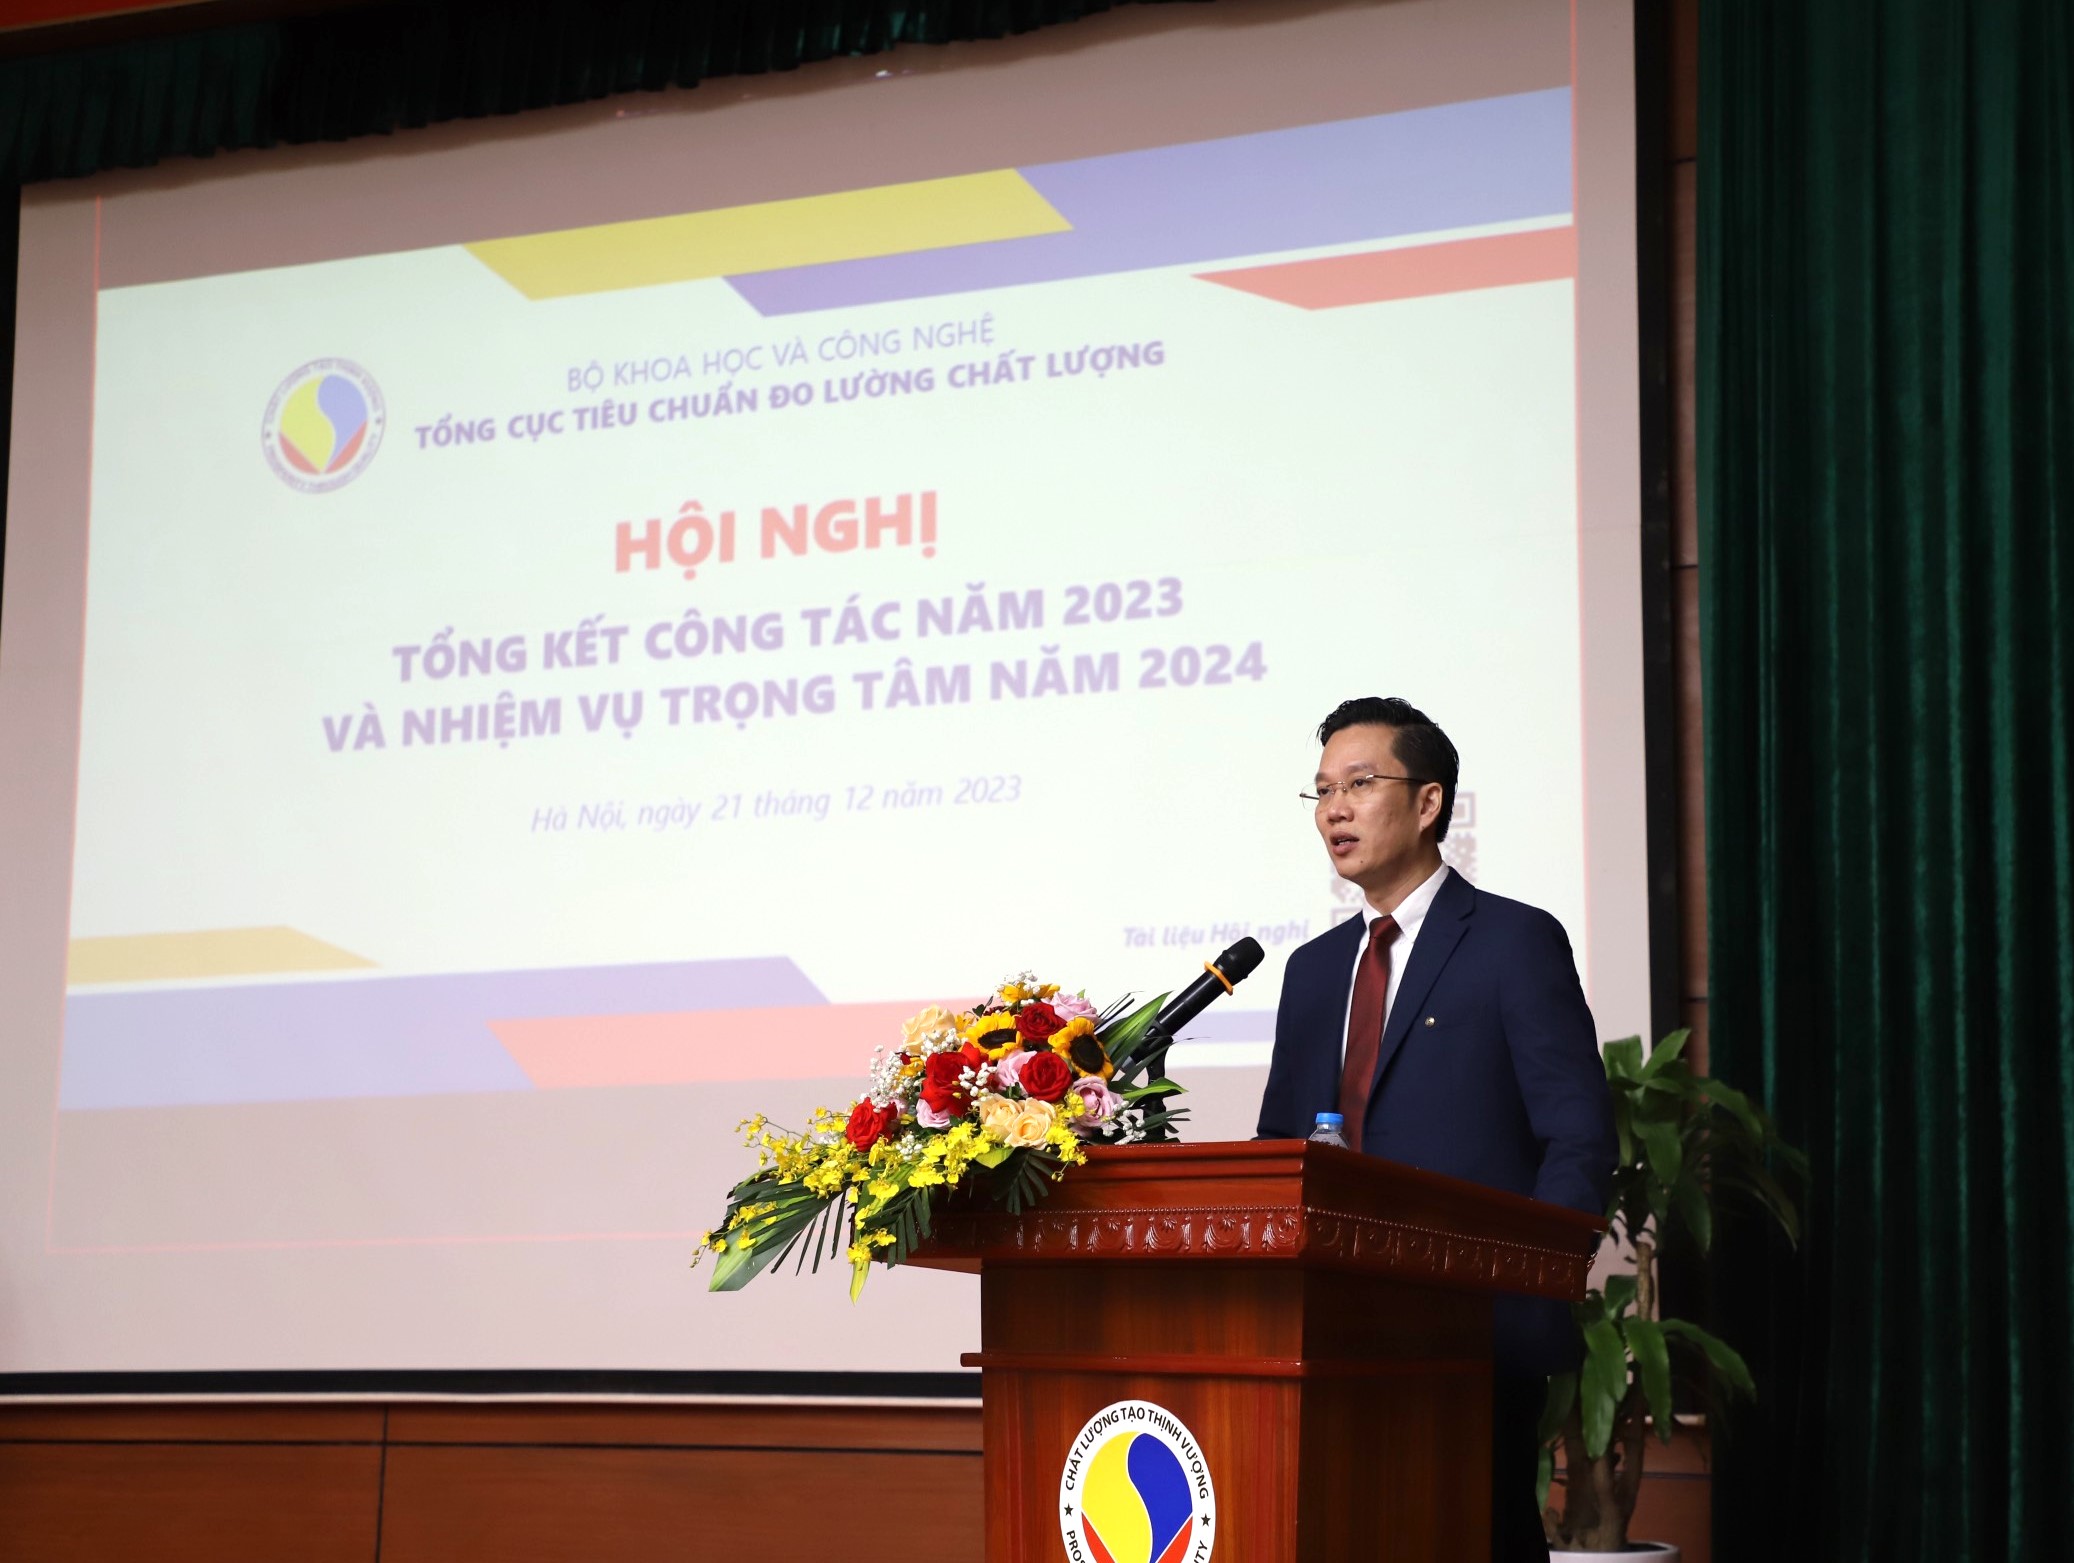 Quyền Tổng cục trưởng Tổng cục TCĐLCL Hà Minh Hiệp phát biểu tại Hội nghị.